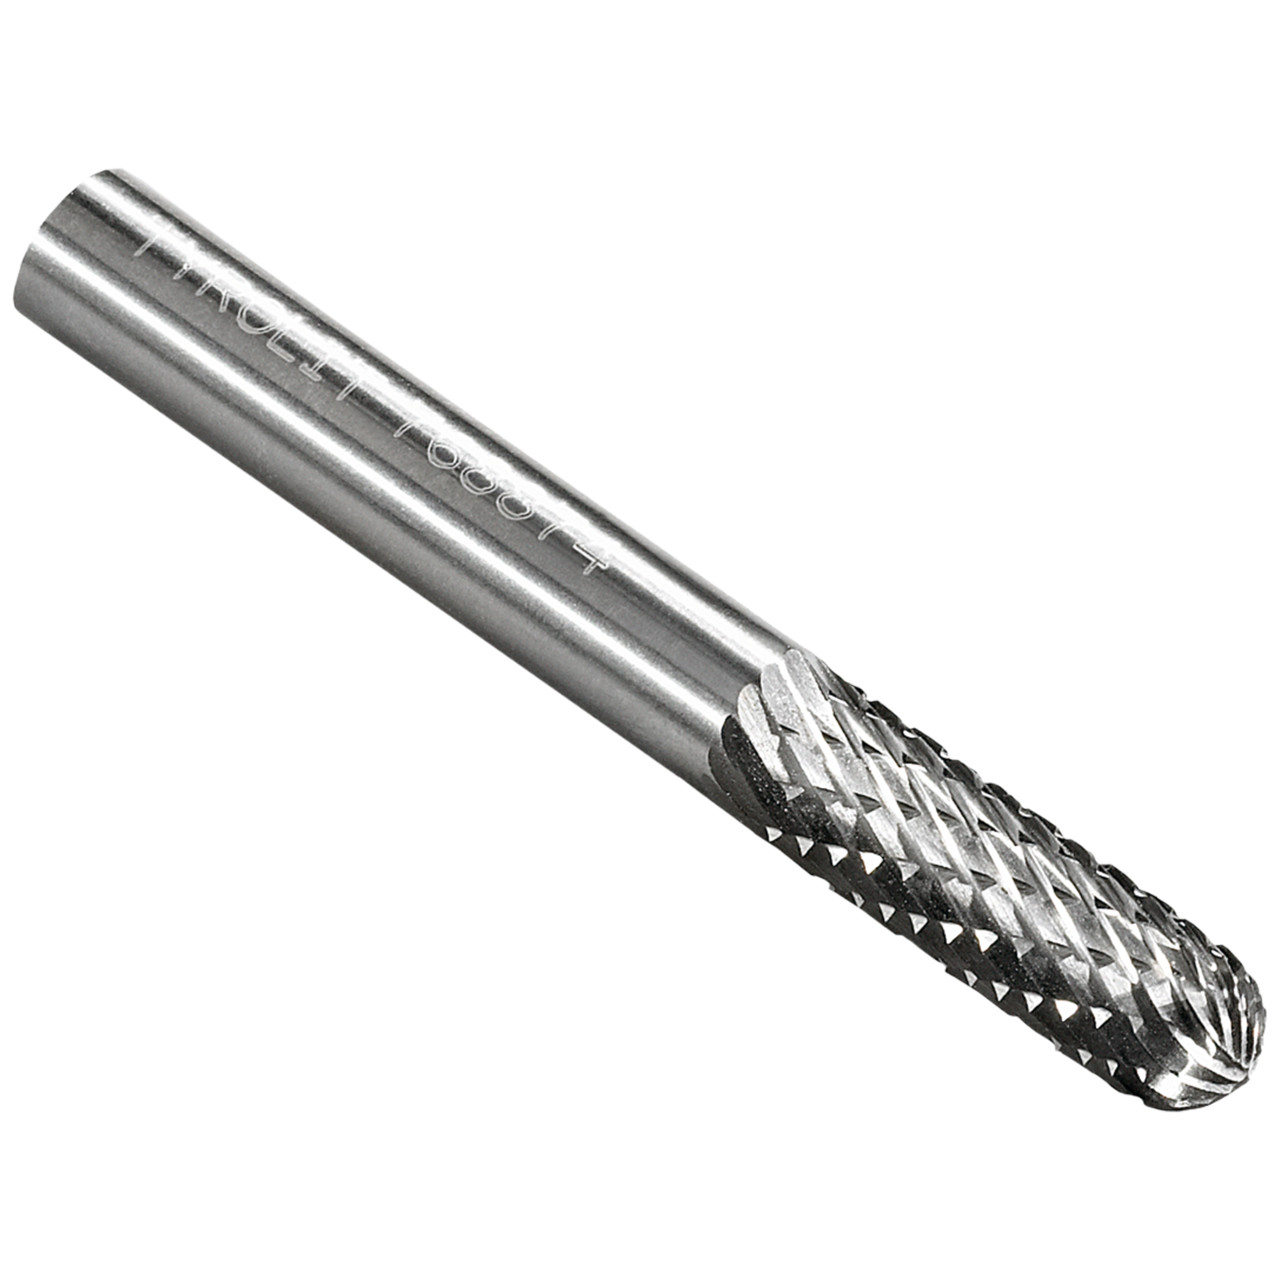 TYROLIT Hartmetallfräser DxT-SxL 10x19-6x65 Für Gusseisen, Stahl und Edelstahl, Form: 52WRC - Walzenrund, Art. 768881